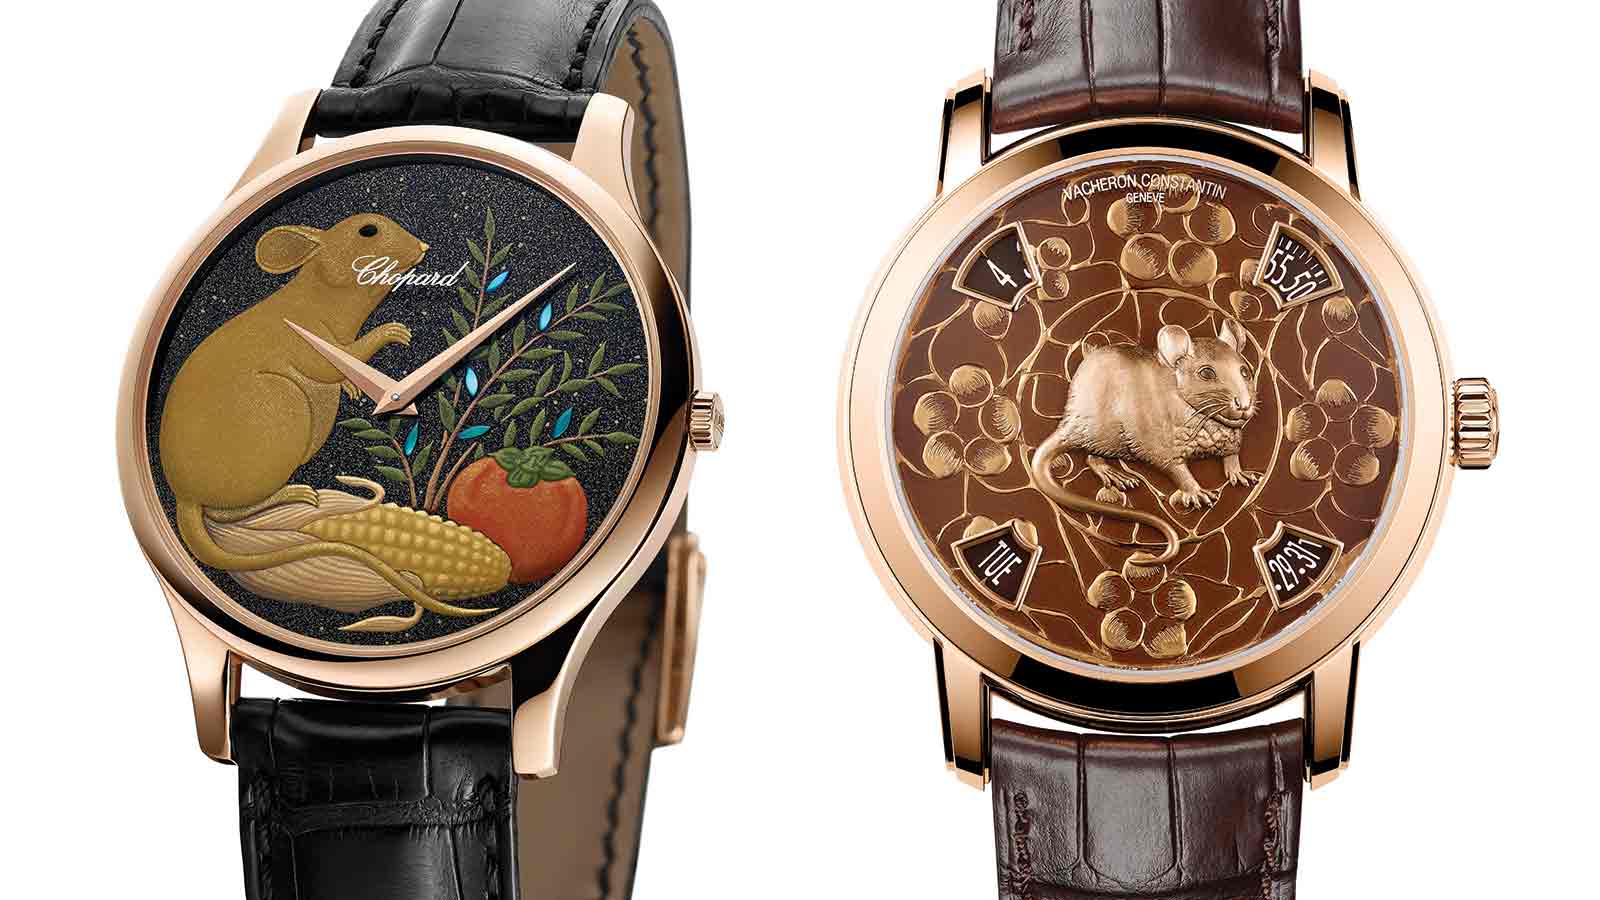 Điểm lại mẫu đồng hồ đặc biệt từ Vacheron Constantin và Chopard cho Tết Canh Tý 2020